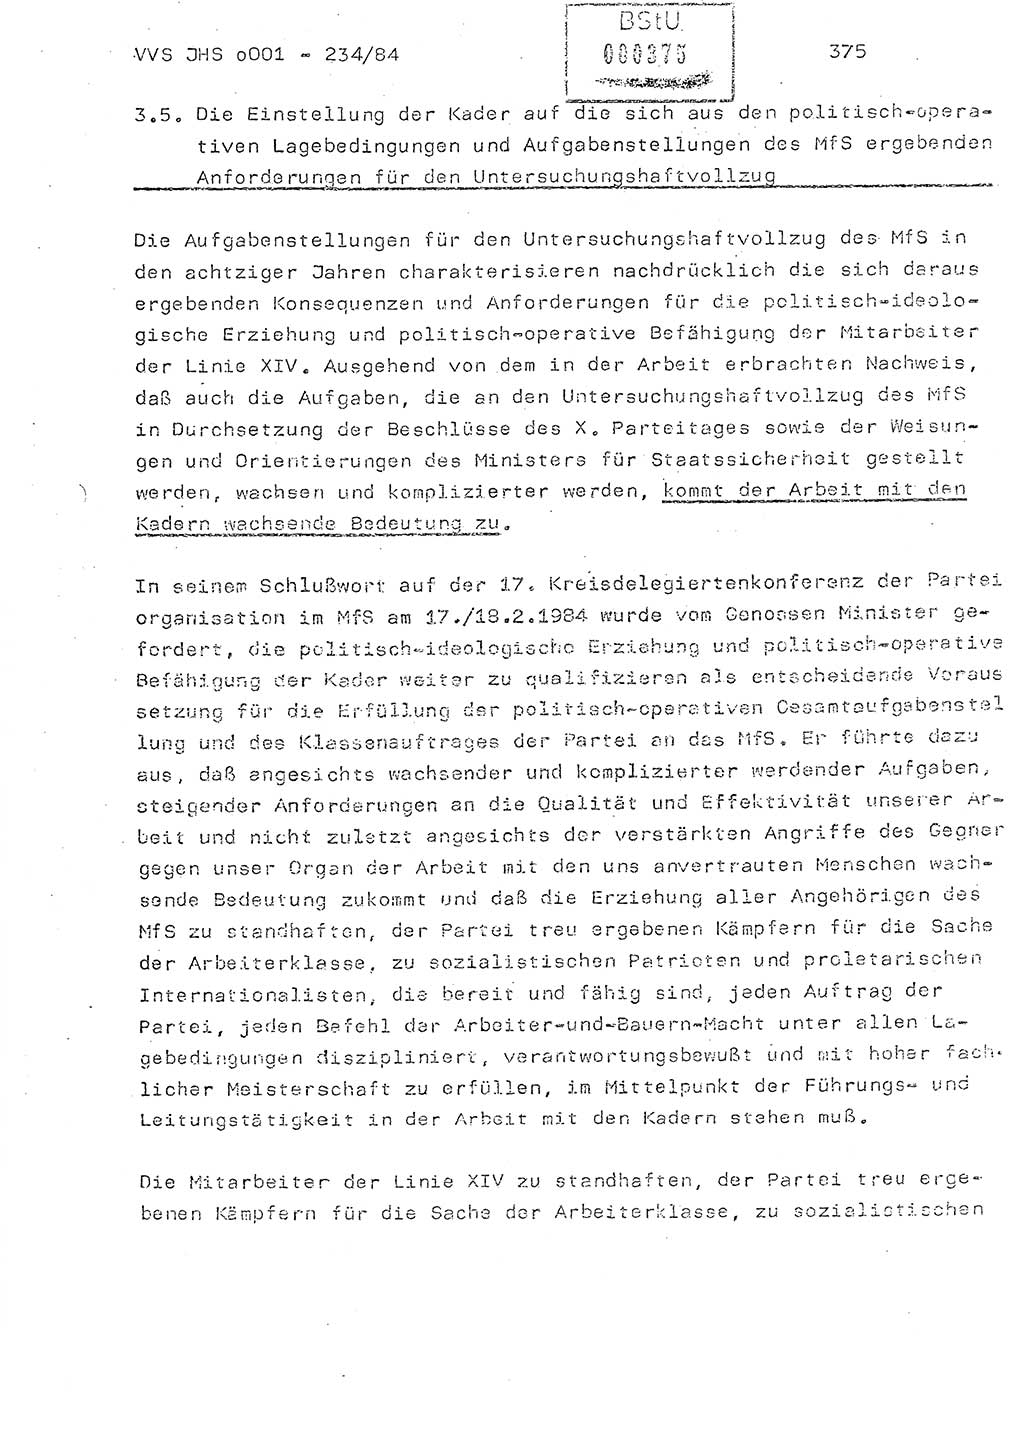 Dissertation Oberst Siegfried Rataizick (Abt. ⅩⅣ), Oberstleutnant Volkmar Heinz (Abt. ⅩⅣ), Oberstleutnant Werner Stein (HA Ⅸ), Hauptmann Heinz Conrad (JHS), Ministerium für Staatssicherheit (MfS) [Deutsche Demokratische Republik (DDR)], Juristische Hochschule (JHS), Vertrauliche Verschlußsache (VVS) o001-234/84, Potsdam 1984, Seite 375 (Diss. MfS DDR JHS VVS o001-234/84 1984, S. 375)